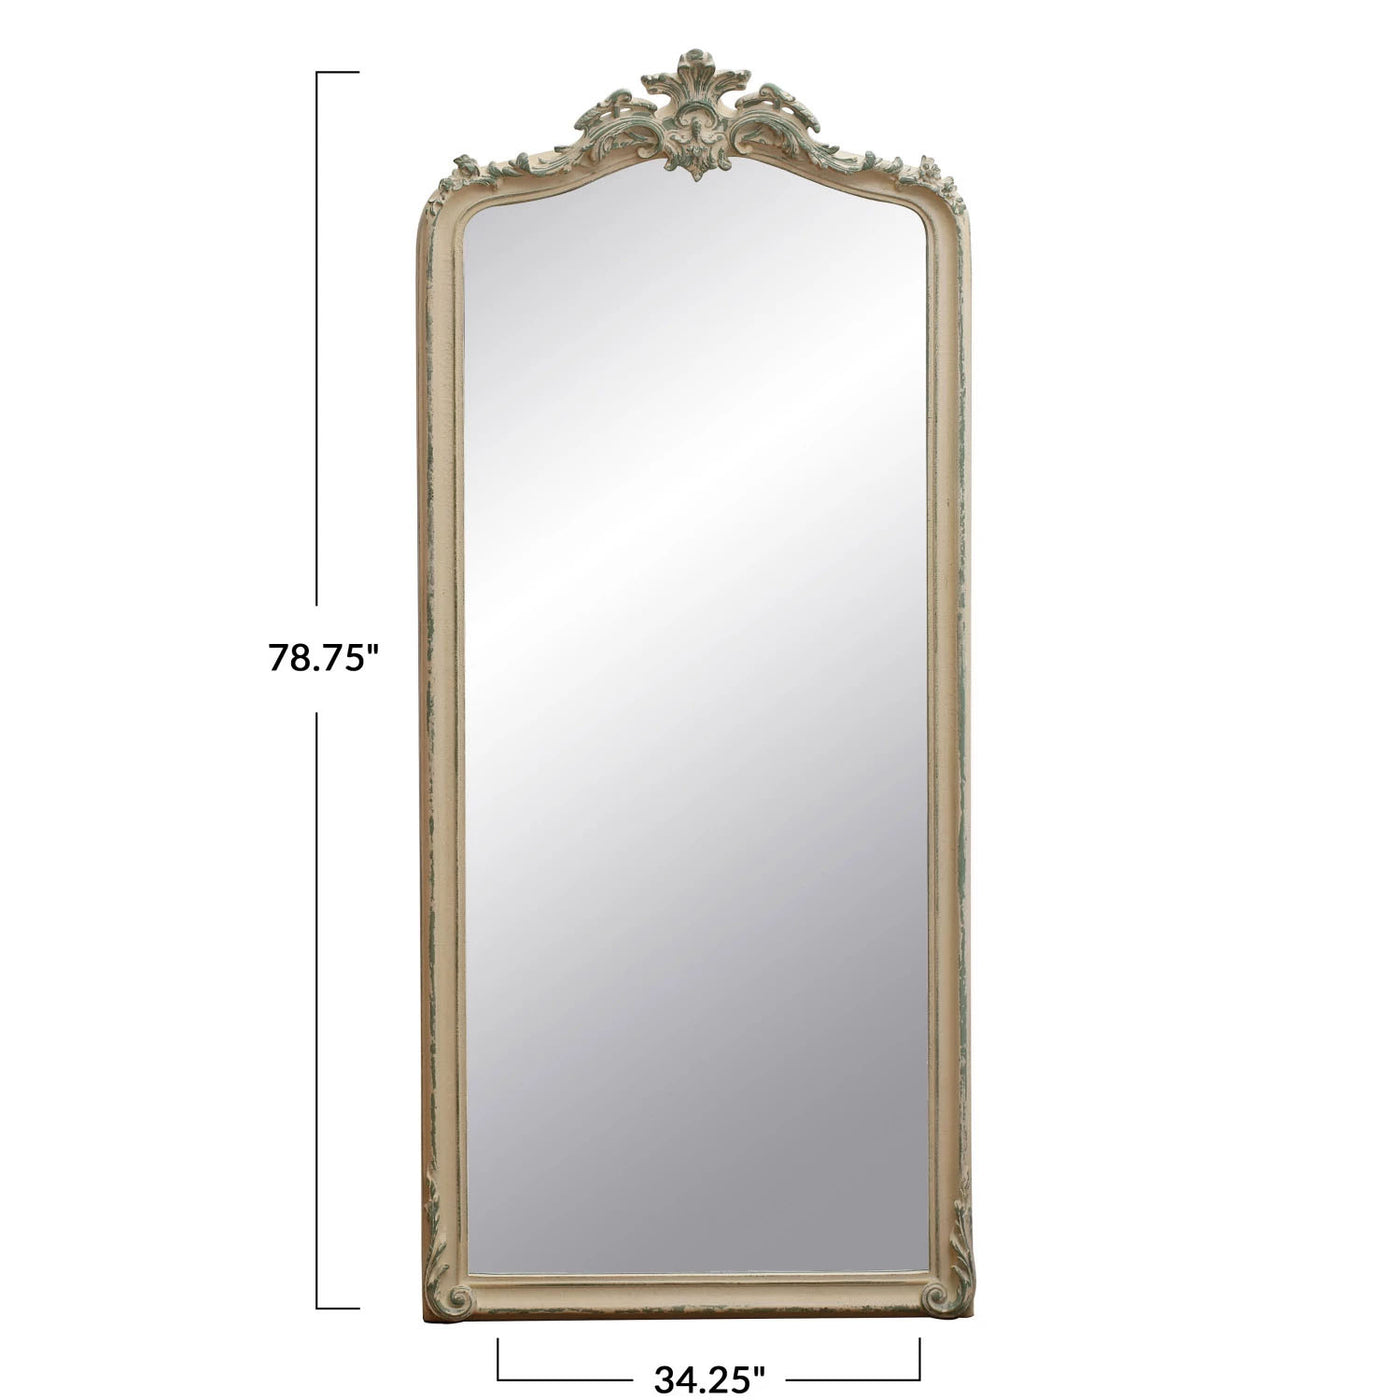 The 78" Eze Mirror